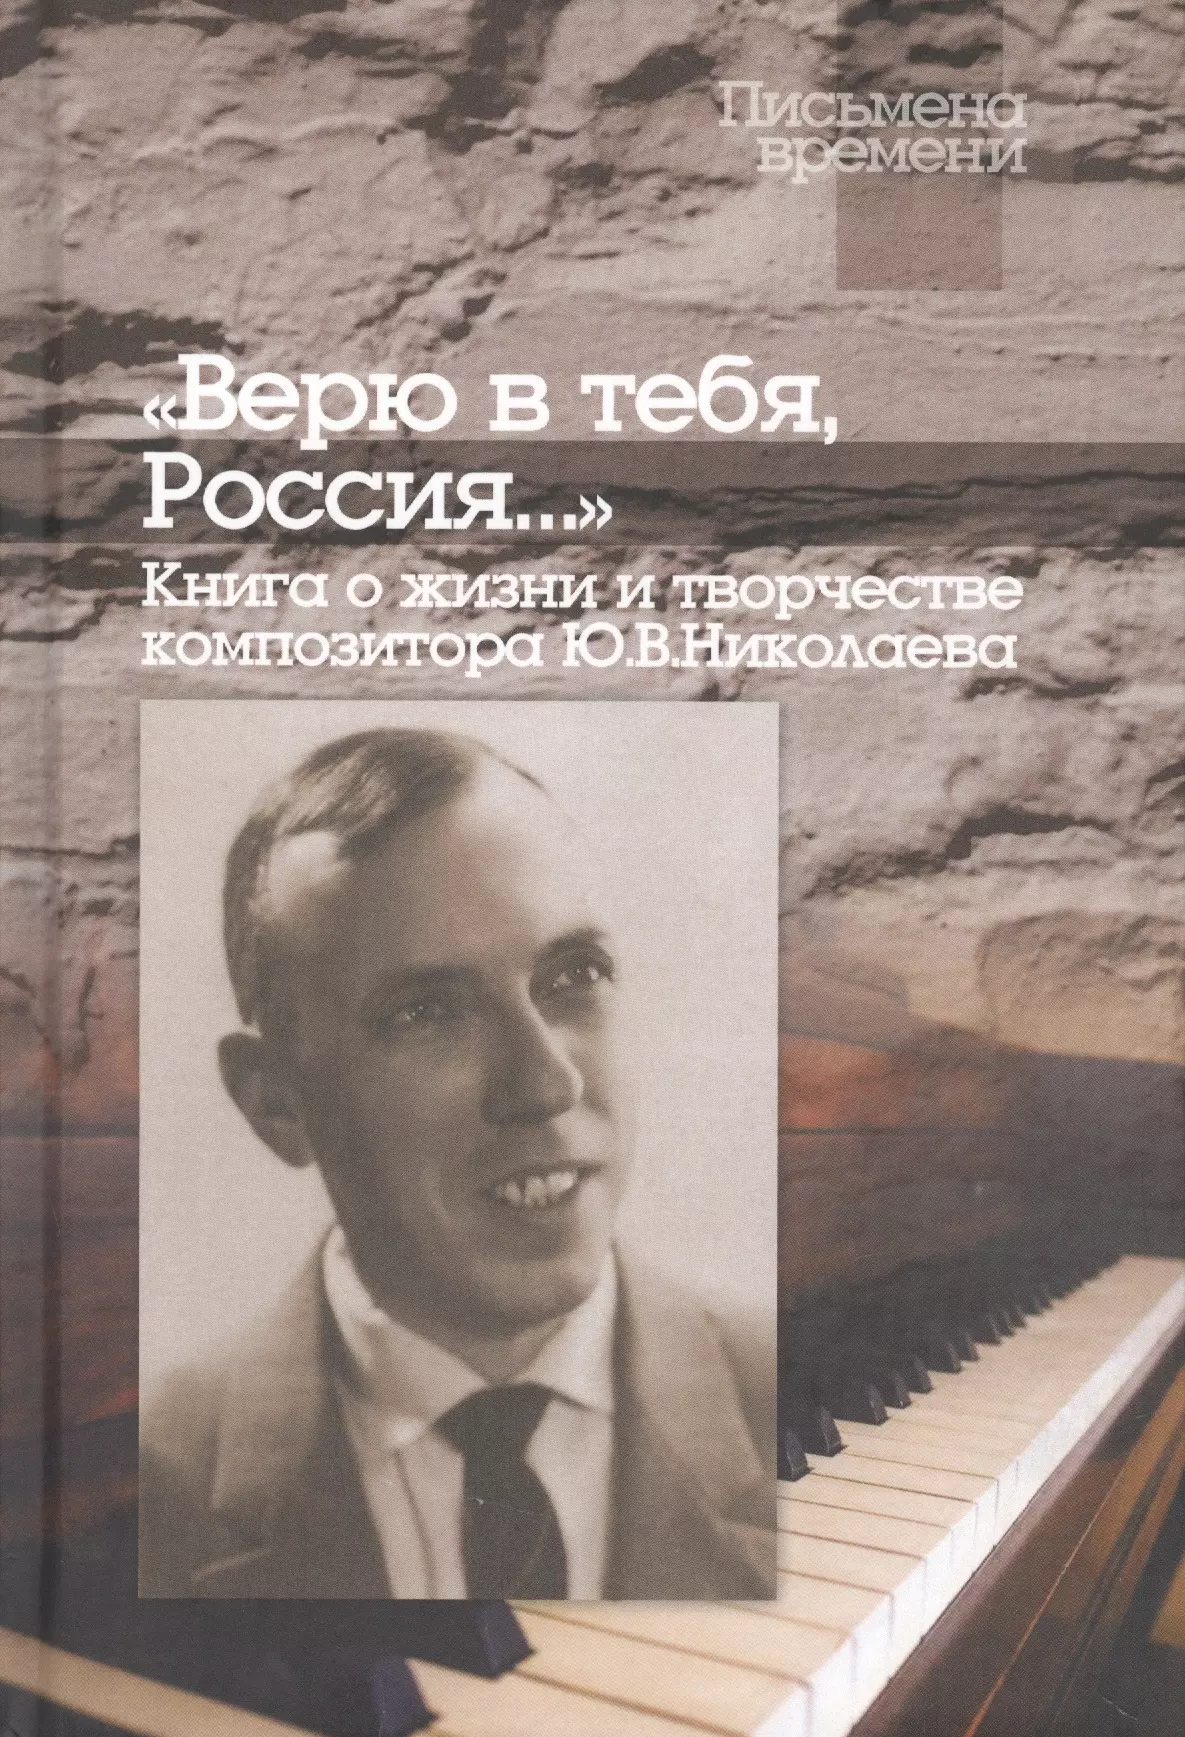  - "Верю в тебя, Россия…" Книга о жизни и творчестве композитора Ю.В.Николаева